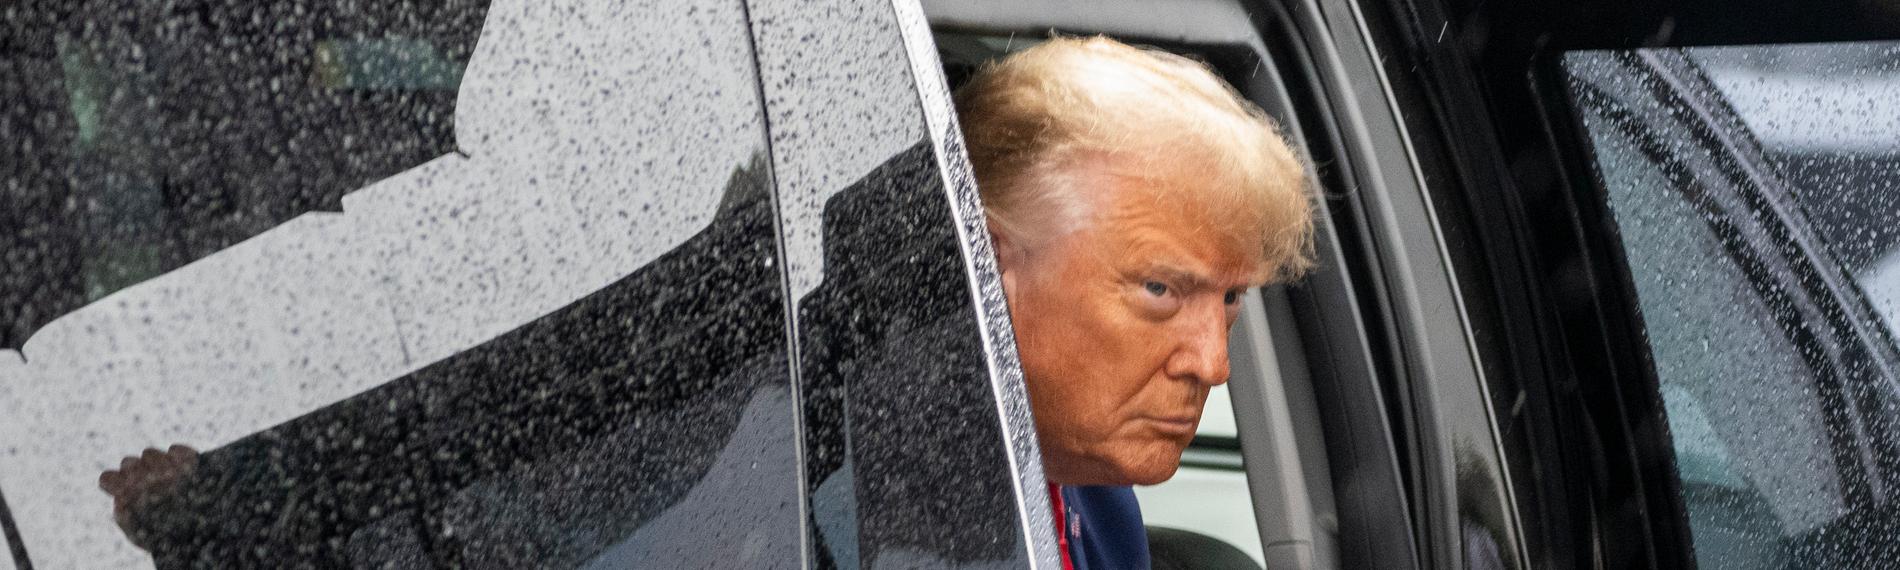 Der ehemalige Präsident Trump steigt aus dem Auto, nachdem er vor Gericht auf nicht schuldig plädierte.